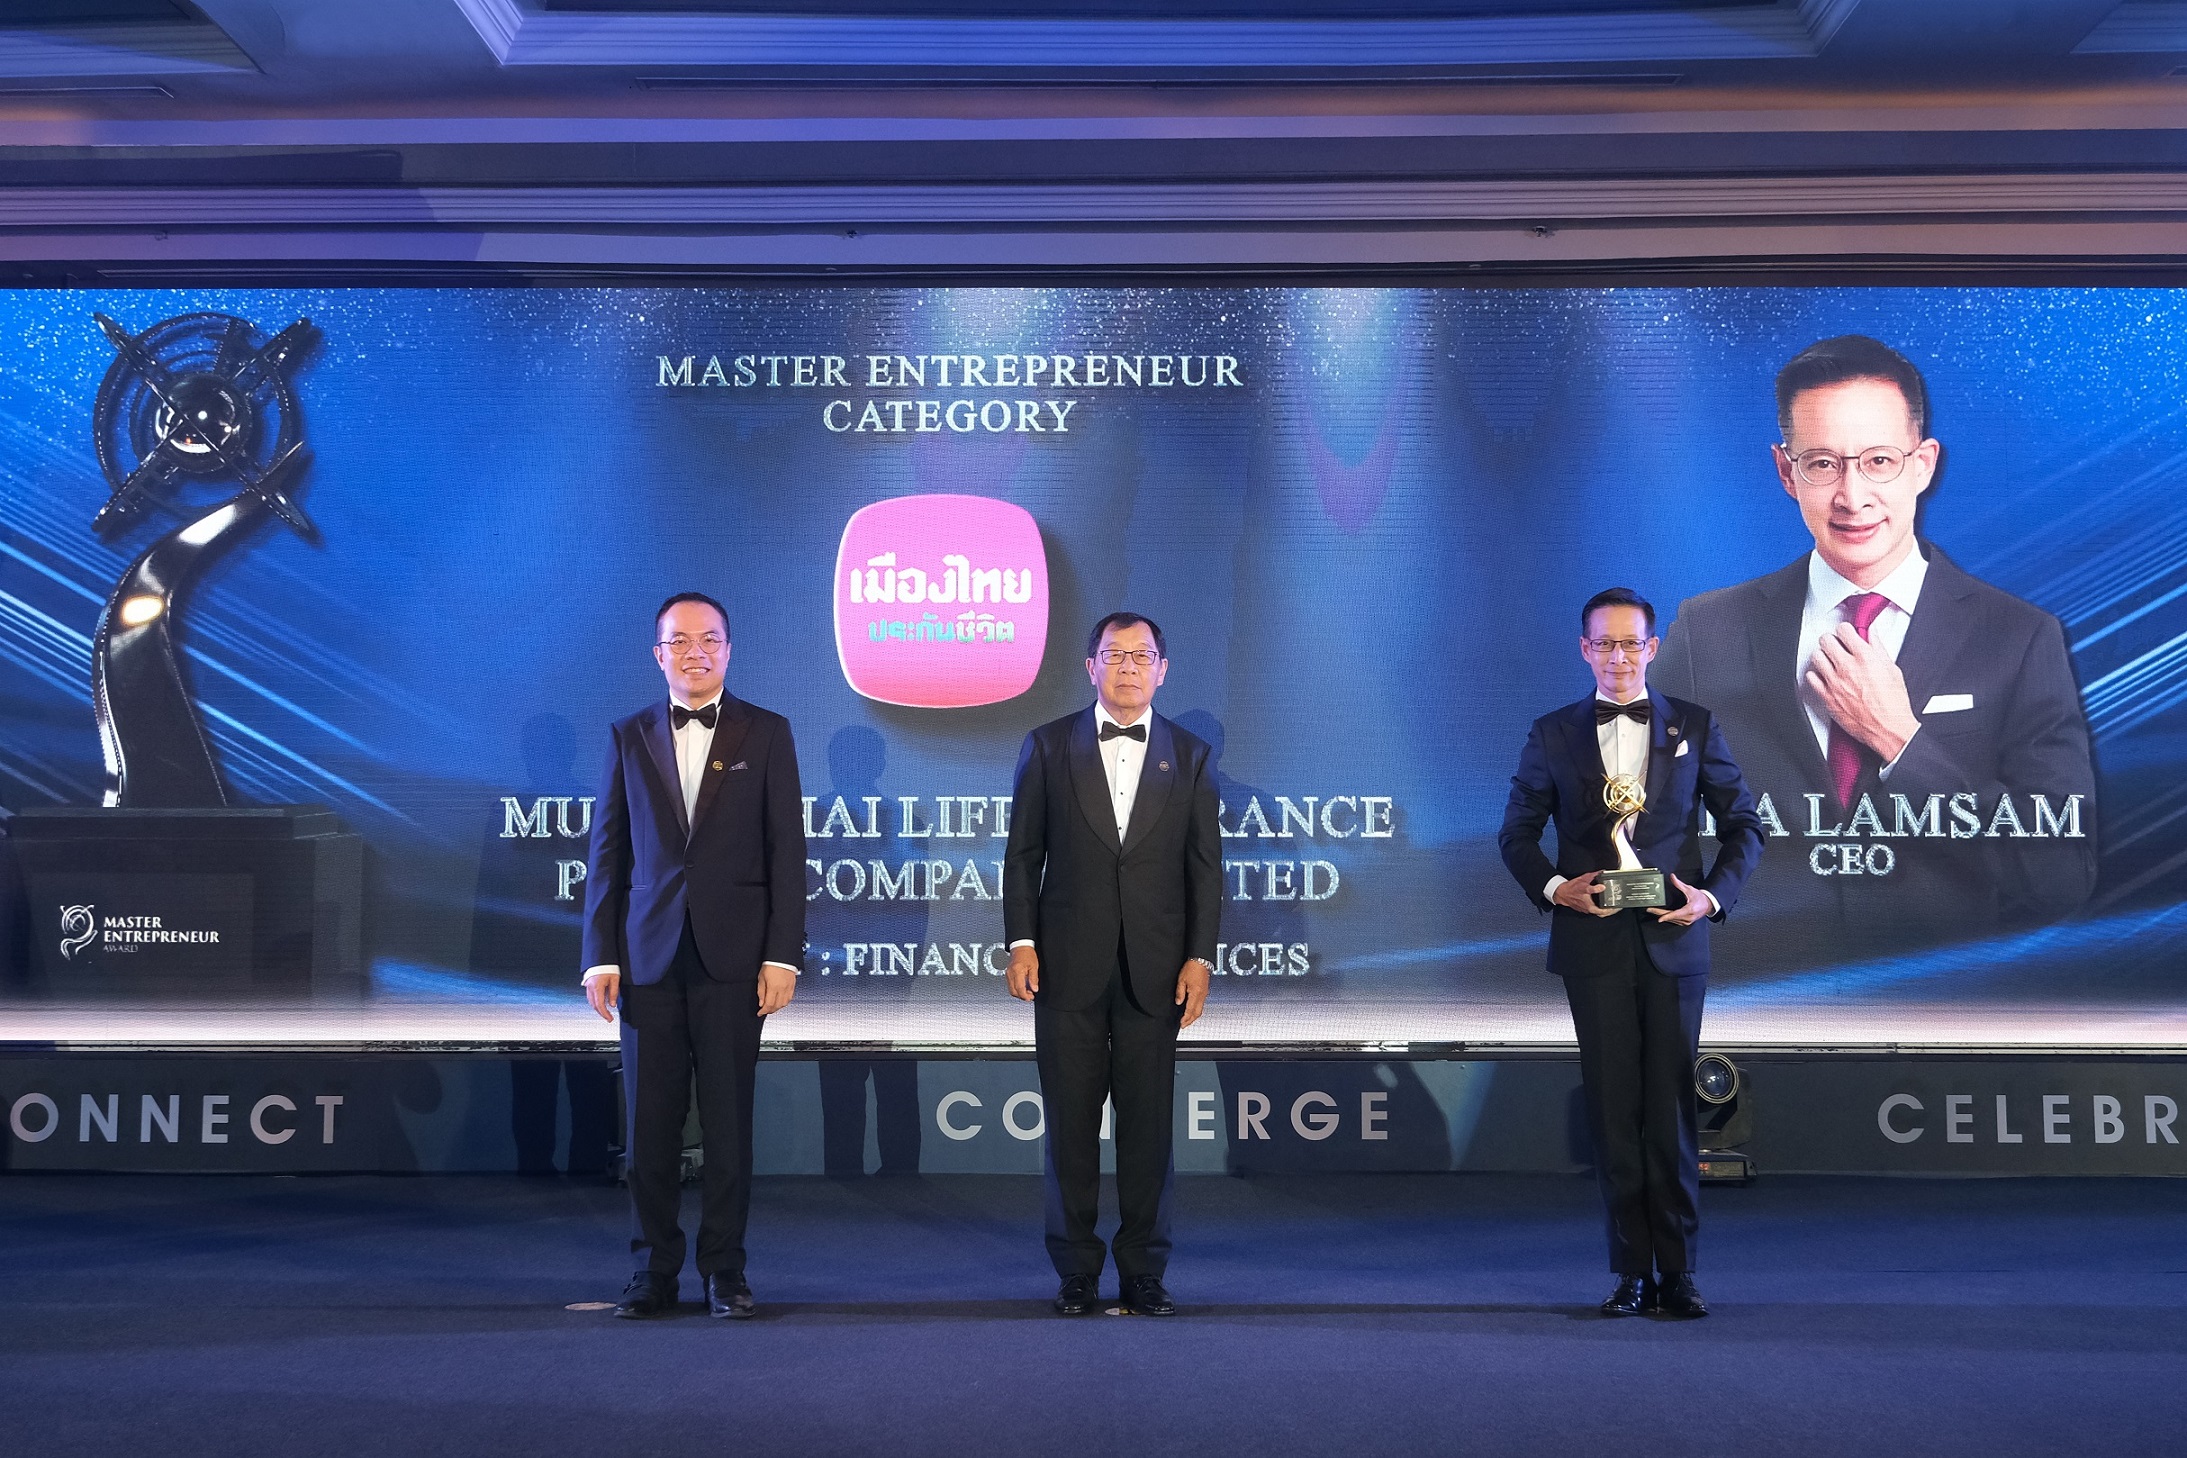 “สาระ ล่ำซำ” คว้ารางวัลสุดยอดผู้บริหารองค์กรระดับสากล “Master Entrepreneur Category” ต่อเนื่องเป็นปีที่ 2 พร้อมอีก 2 รางวัลใหญ่ “Corporate Excellence Category และ Inspirational Brand Category”  จาก Asia Pacific Enterprise Awards (APEA) Thailand 2022